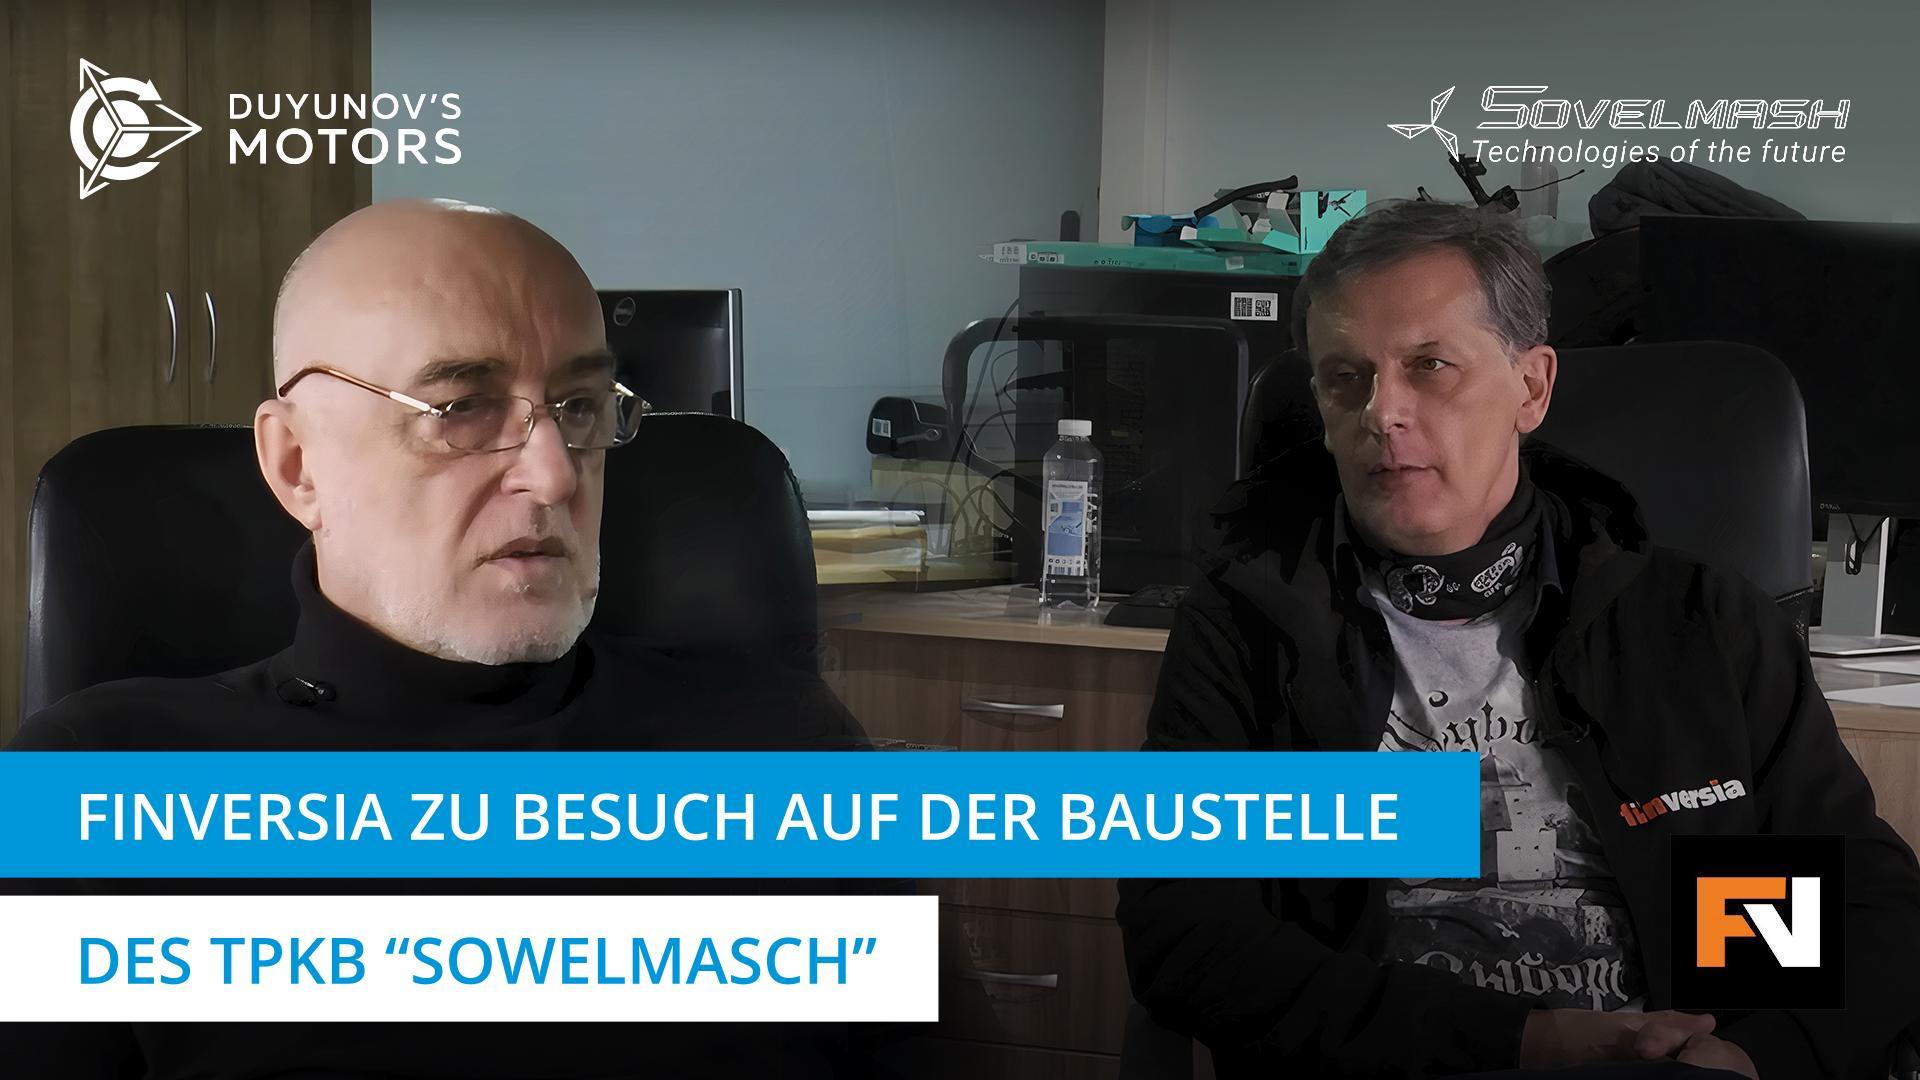 Zu Besuch bei "Sowelmasch" war Jan Art, Chefredakteur des YouTube-Kanals Finversia